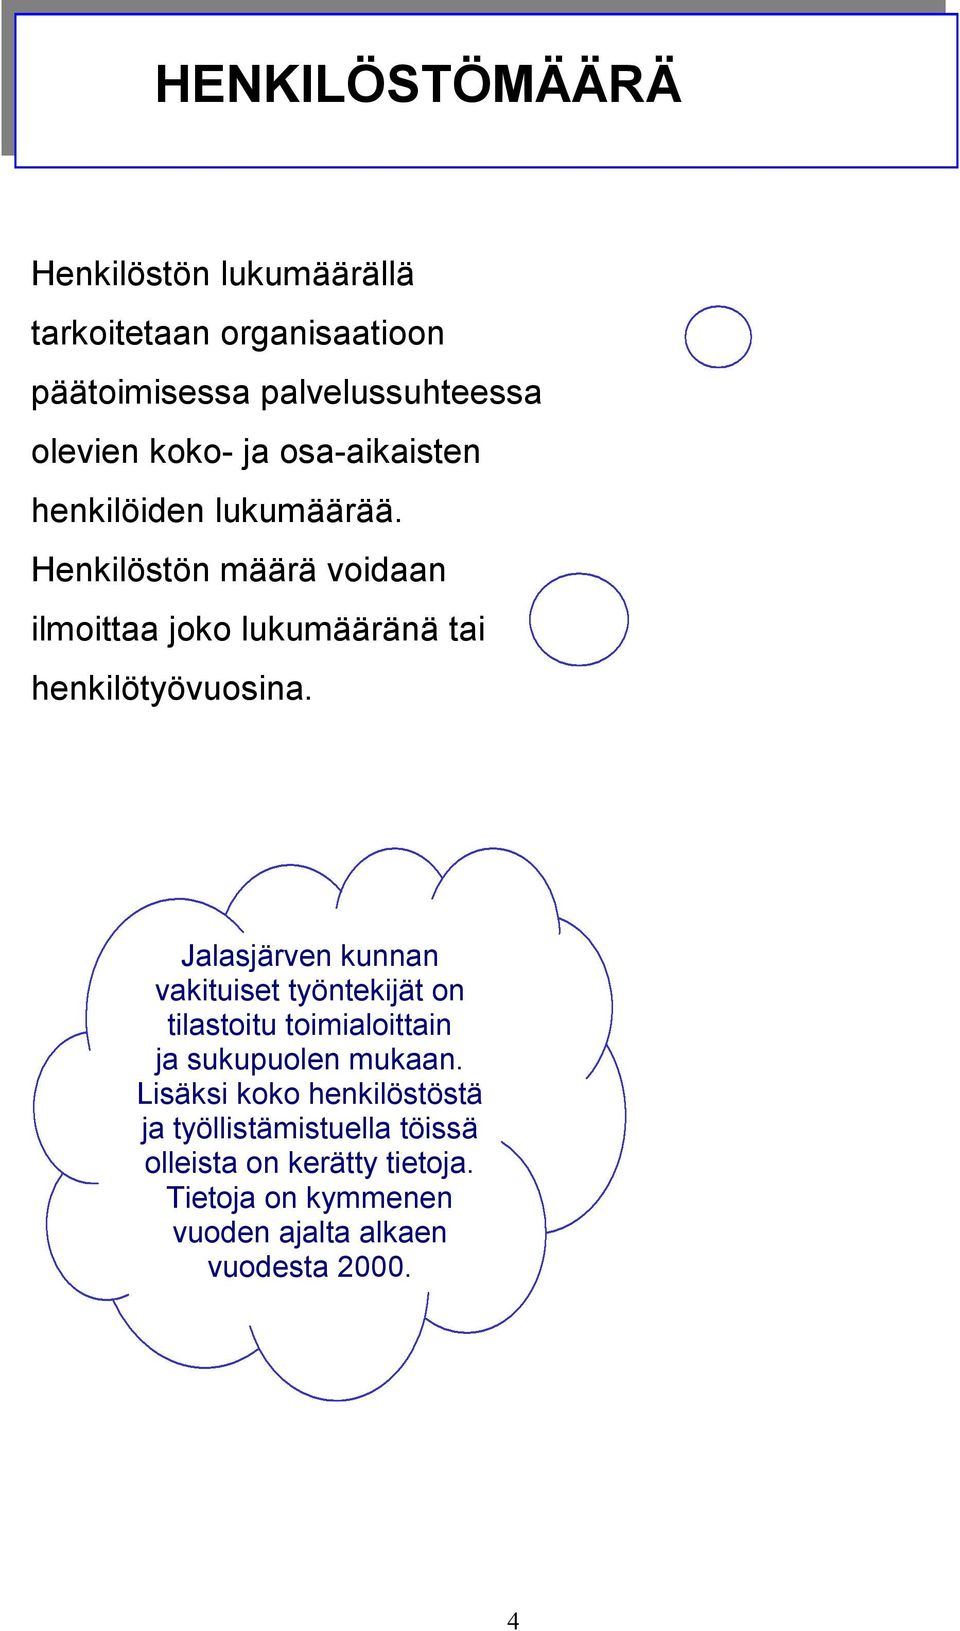 Jalasjärven kunnan vakituiset työntekijät on tilastoitu toimialoittain ja sukupuolen mukaan.